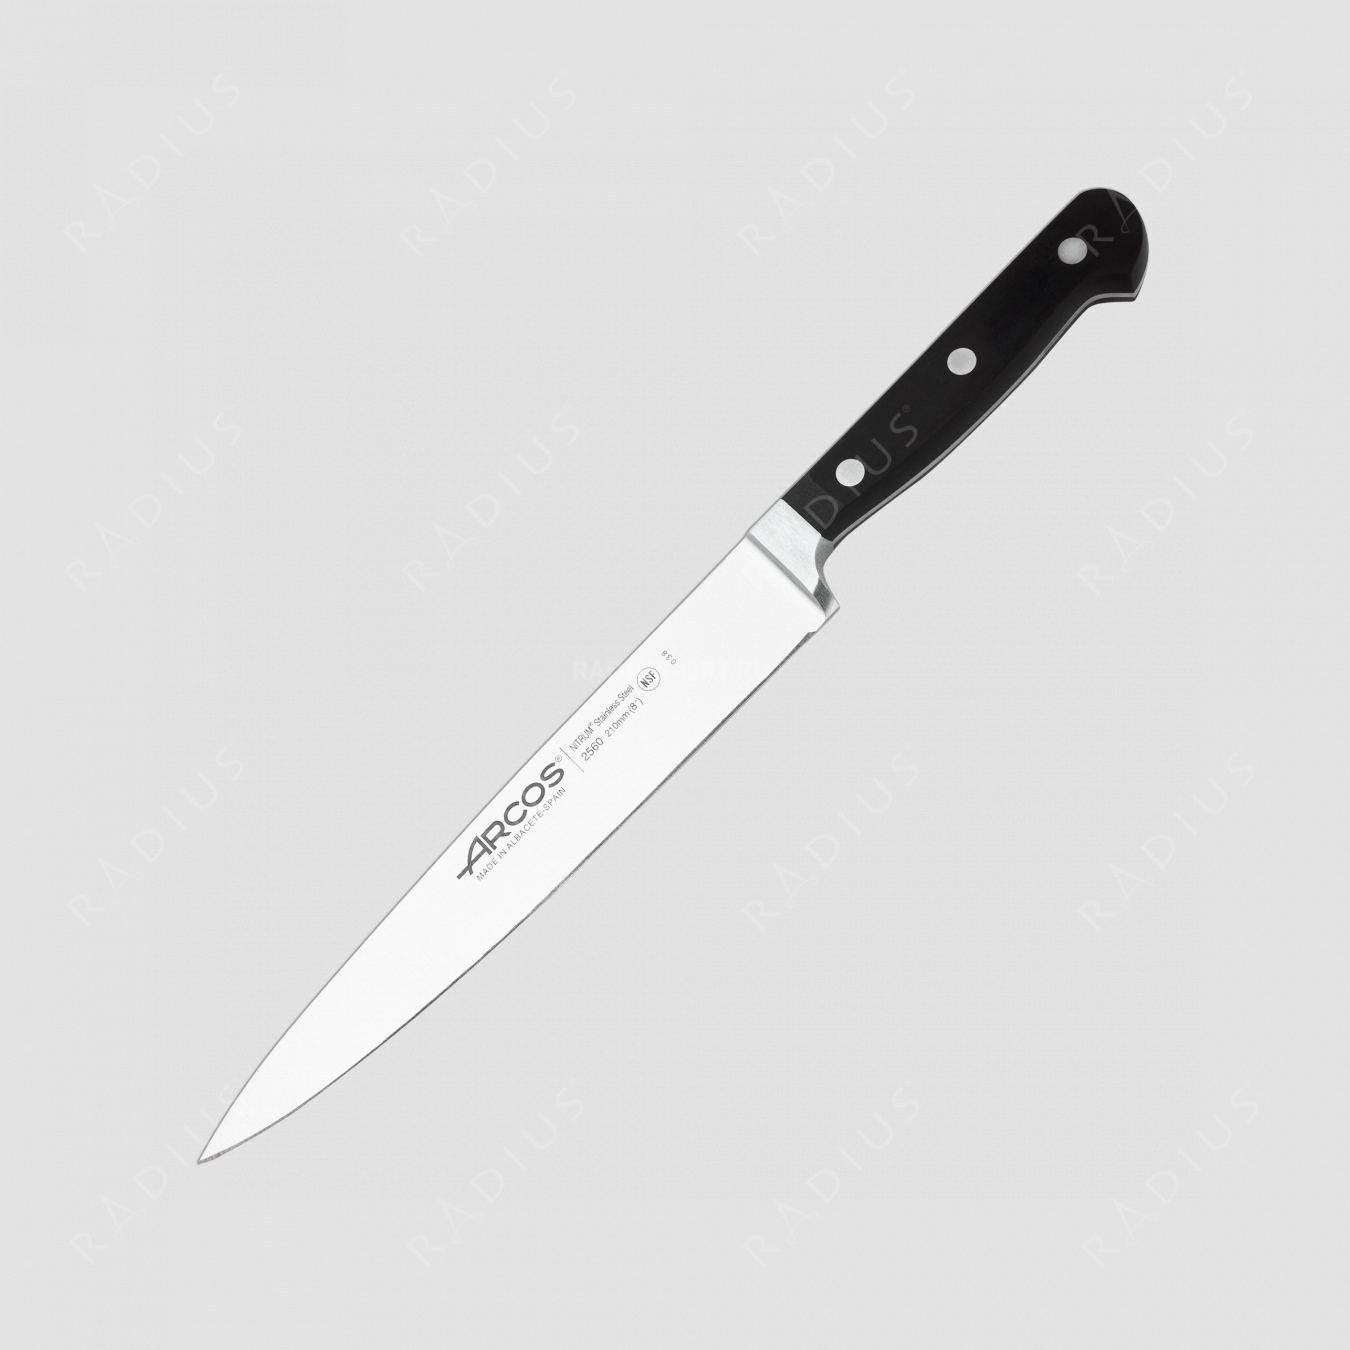 Нож кухонный 21 см, серия Clasica, ARCOS, Испания